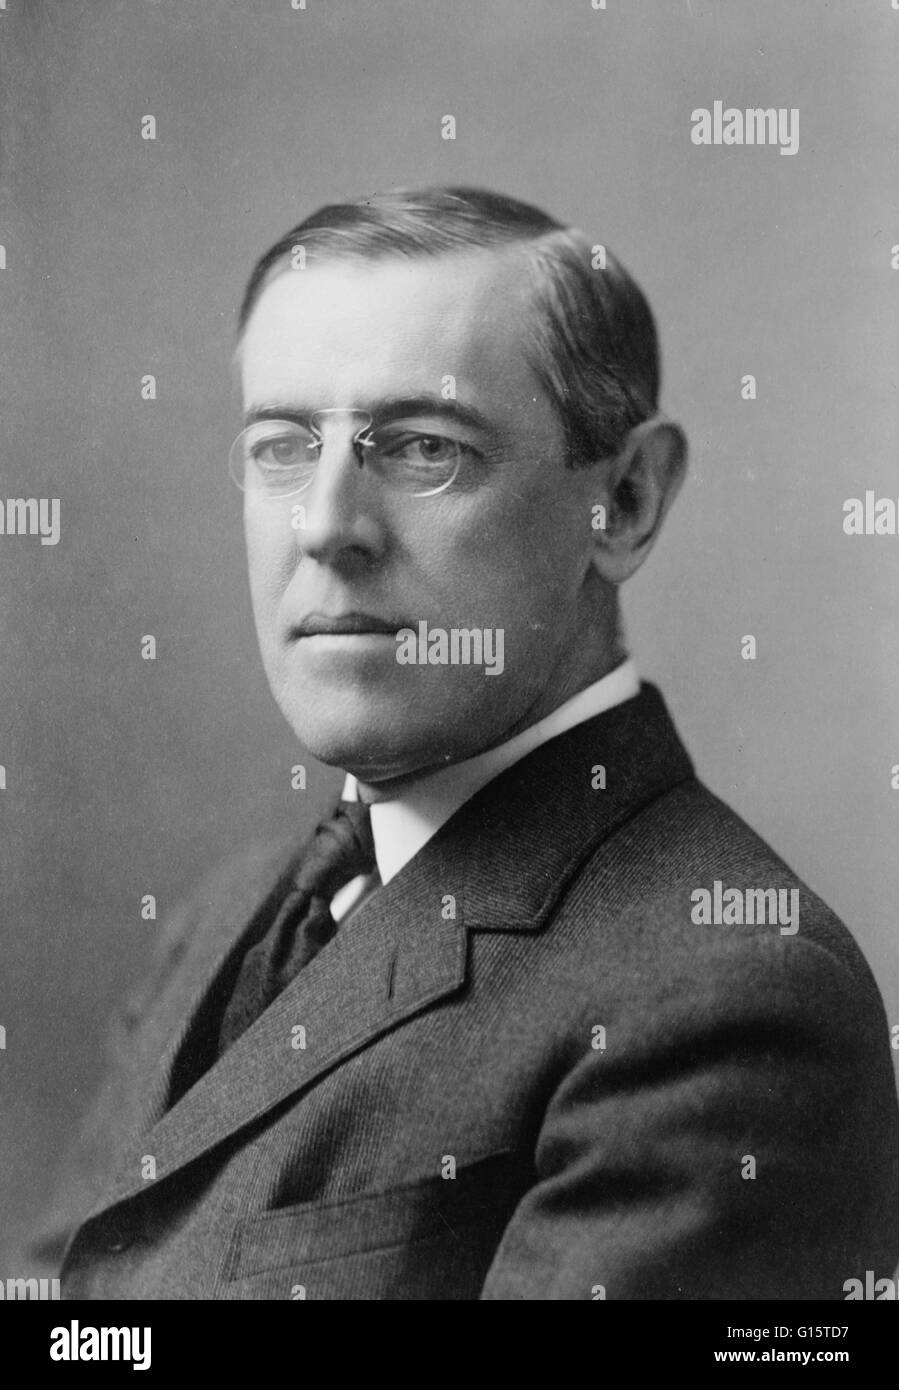 Wilson-Foto aufgenommen im Jahr 1908. Thomas Woodrow Wilson (28. Dezember 1856 - 3. Februar 1924) war der 28. Präsident der Vereinigten Staaten, von 1913 bis 1921. Er diente als Präsident der Princeton University von 1902 bis 1910 und dann als Gouverneur von neu Stockfoto